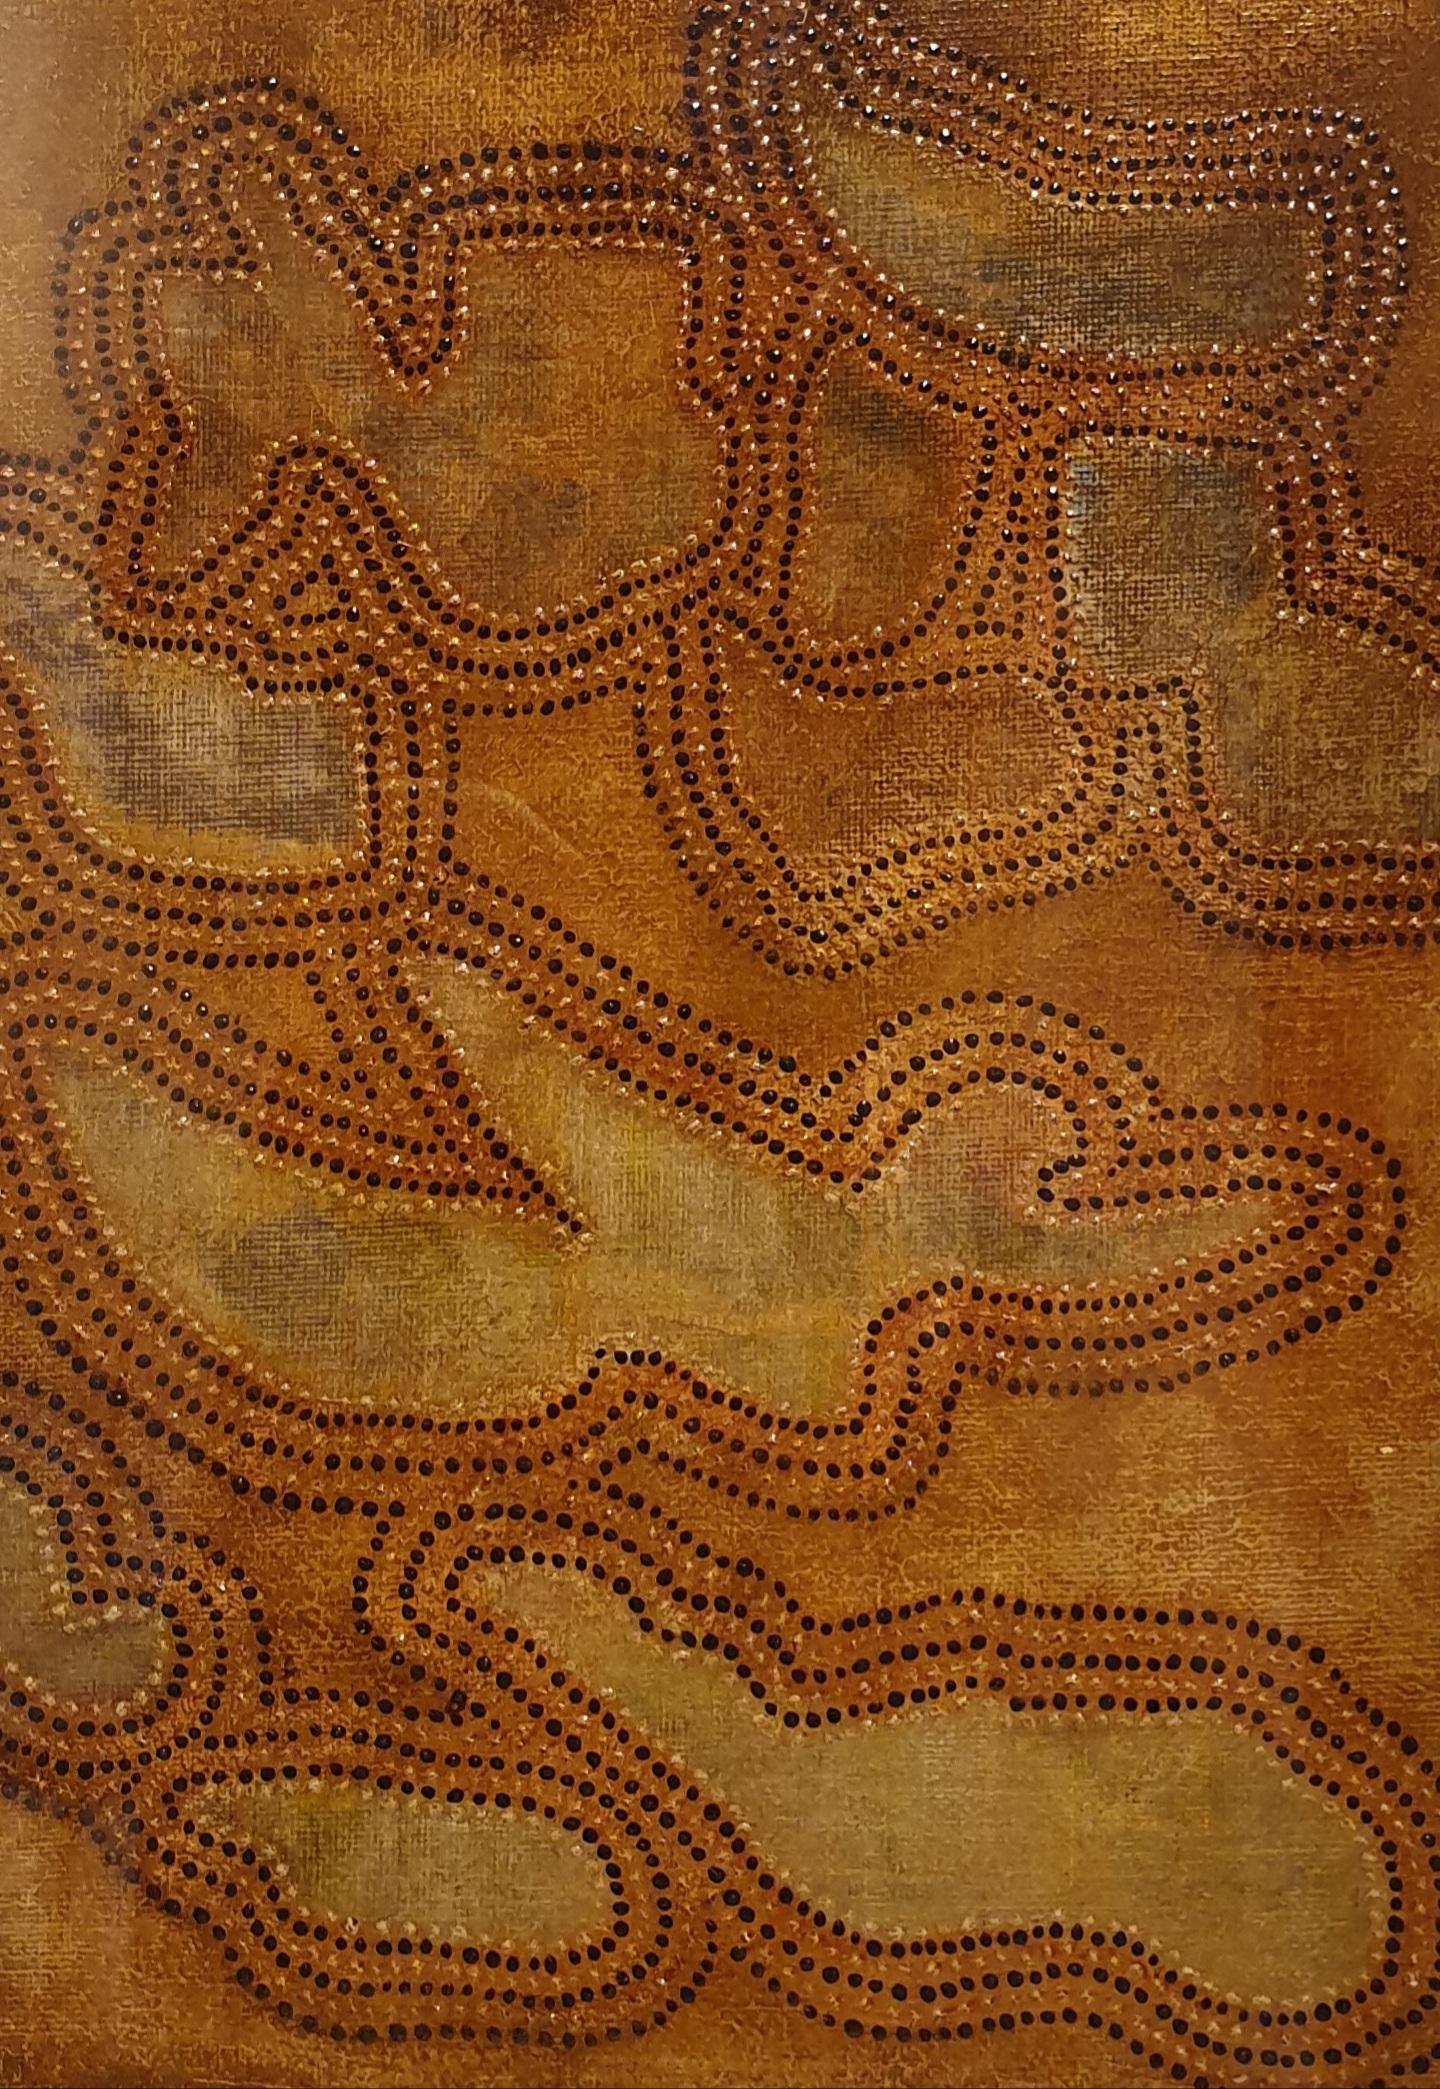 Zeitgenössisch von der Aborigine inspirierte abstrakte Skulptur. – Painting von Menno Modderman